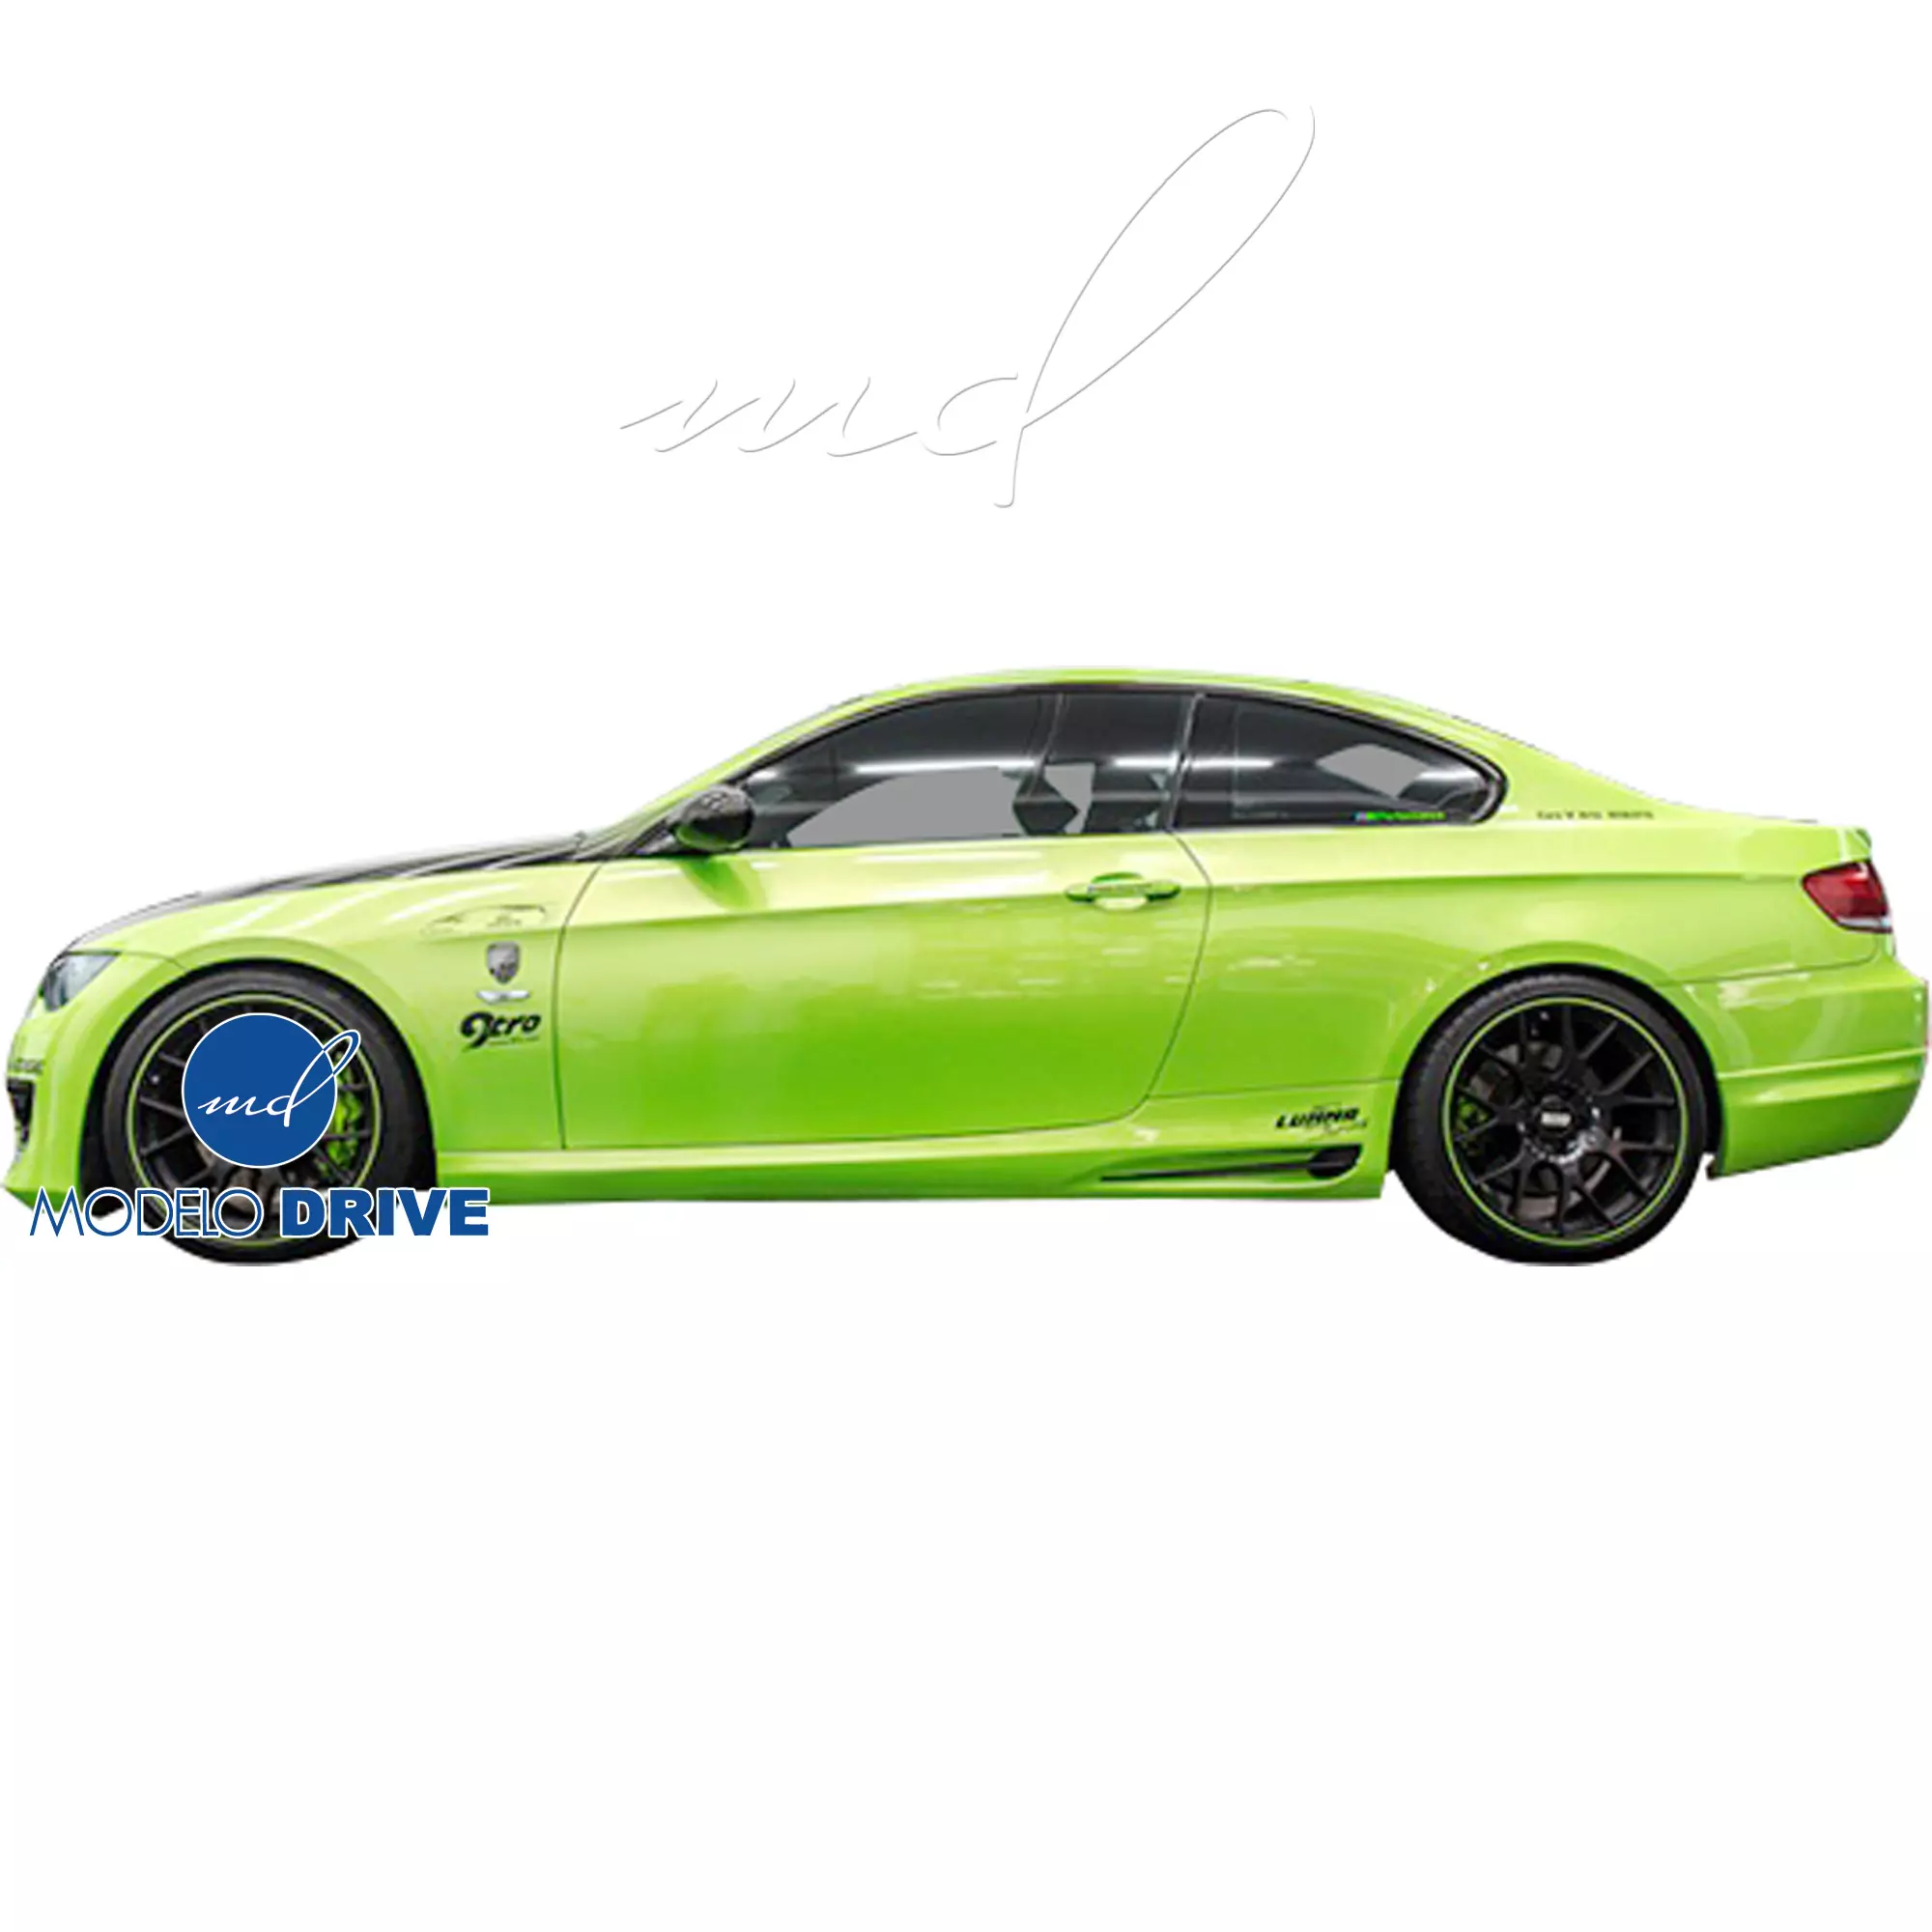 ModeloDrive FRP 1M-Style Body Kit 4pc > BMW 3-Series E92 2007-2010 > 2dr - Image 25